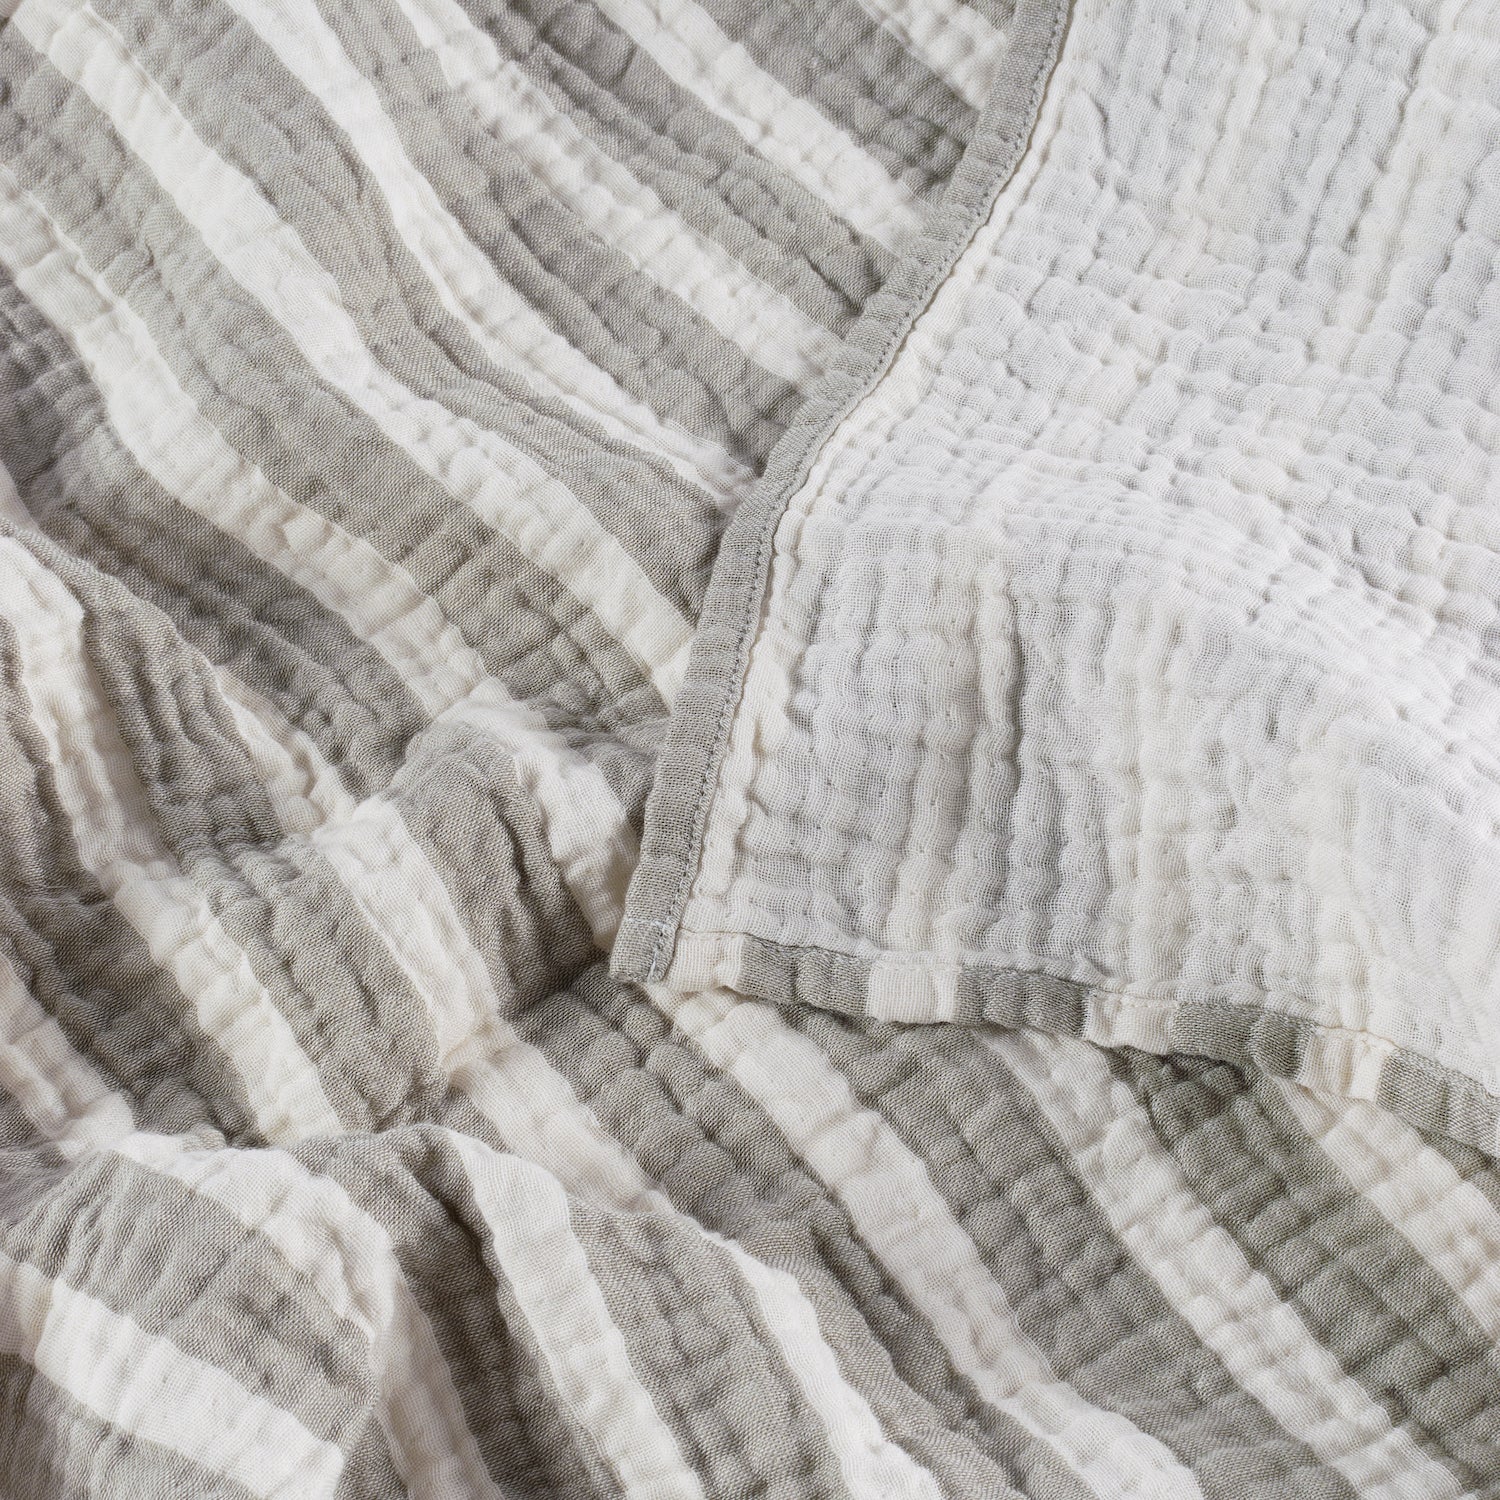 Soft Touch Cuddle Blanket - Sage Stripe